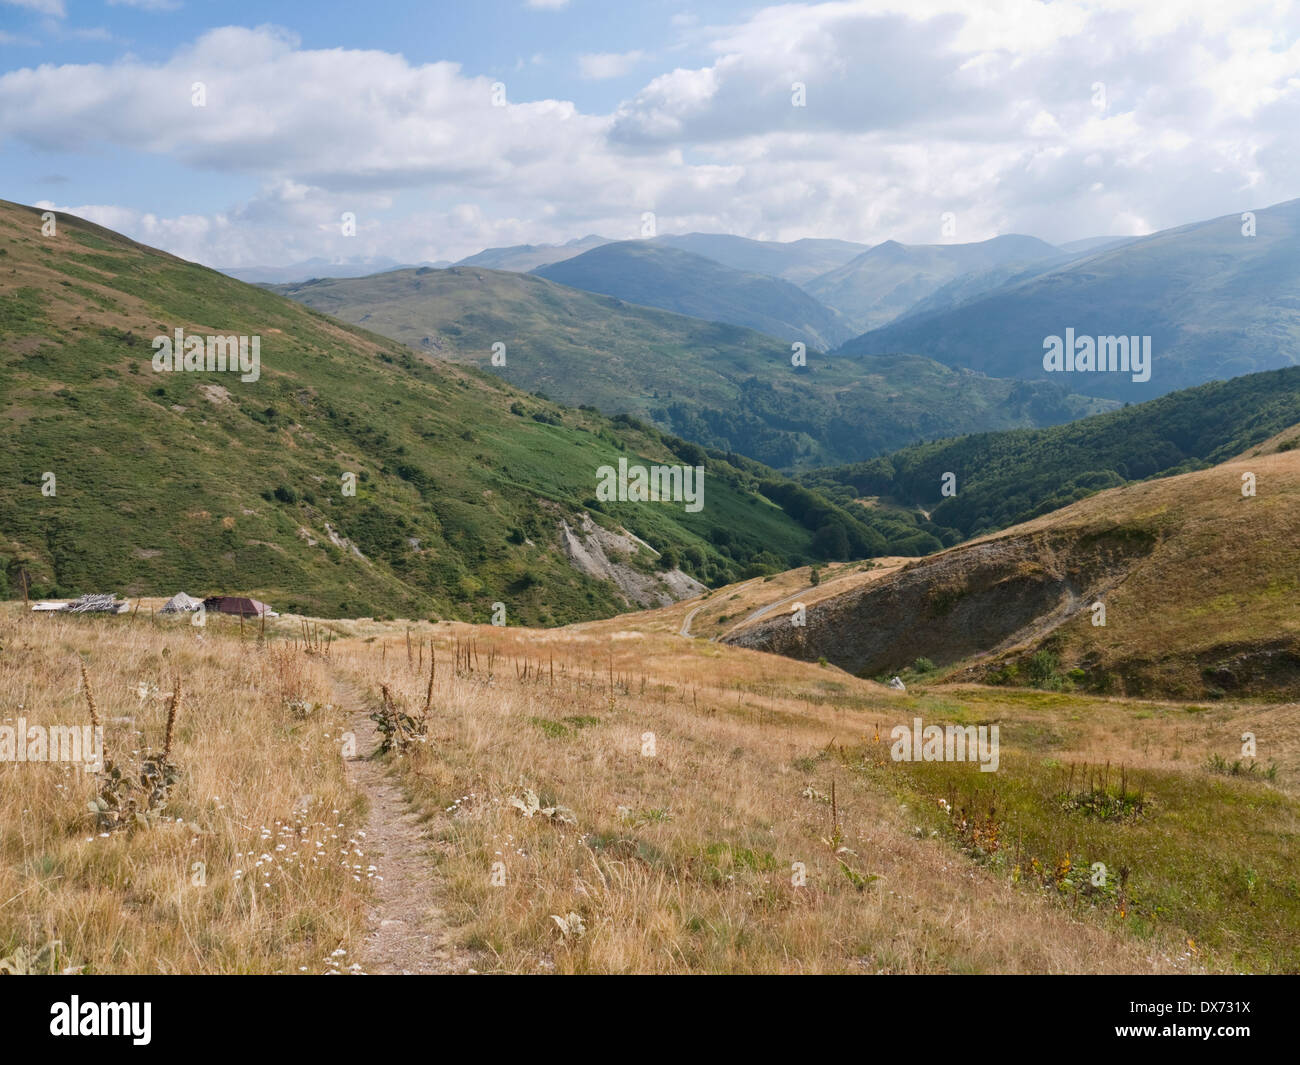 L'approche de Golem Korab, le plus haut sommet en Macédoine, de Strezimir. Les montagnes en arrière-plan Banque D'Images